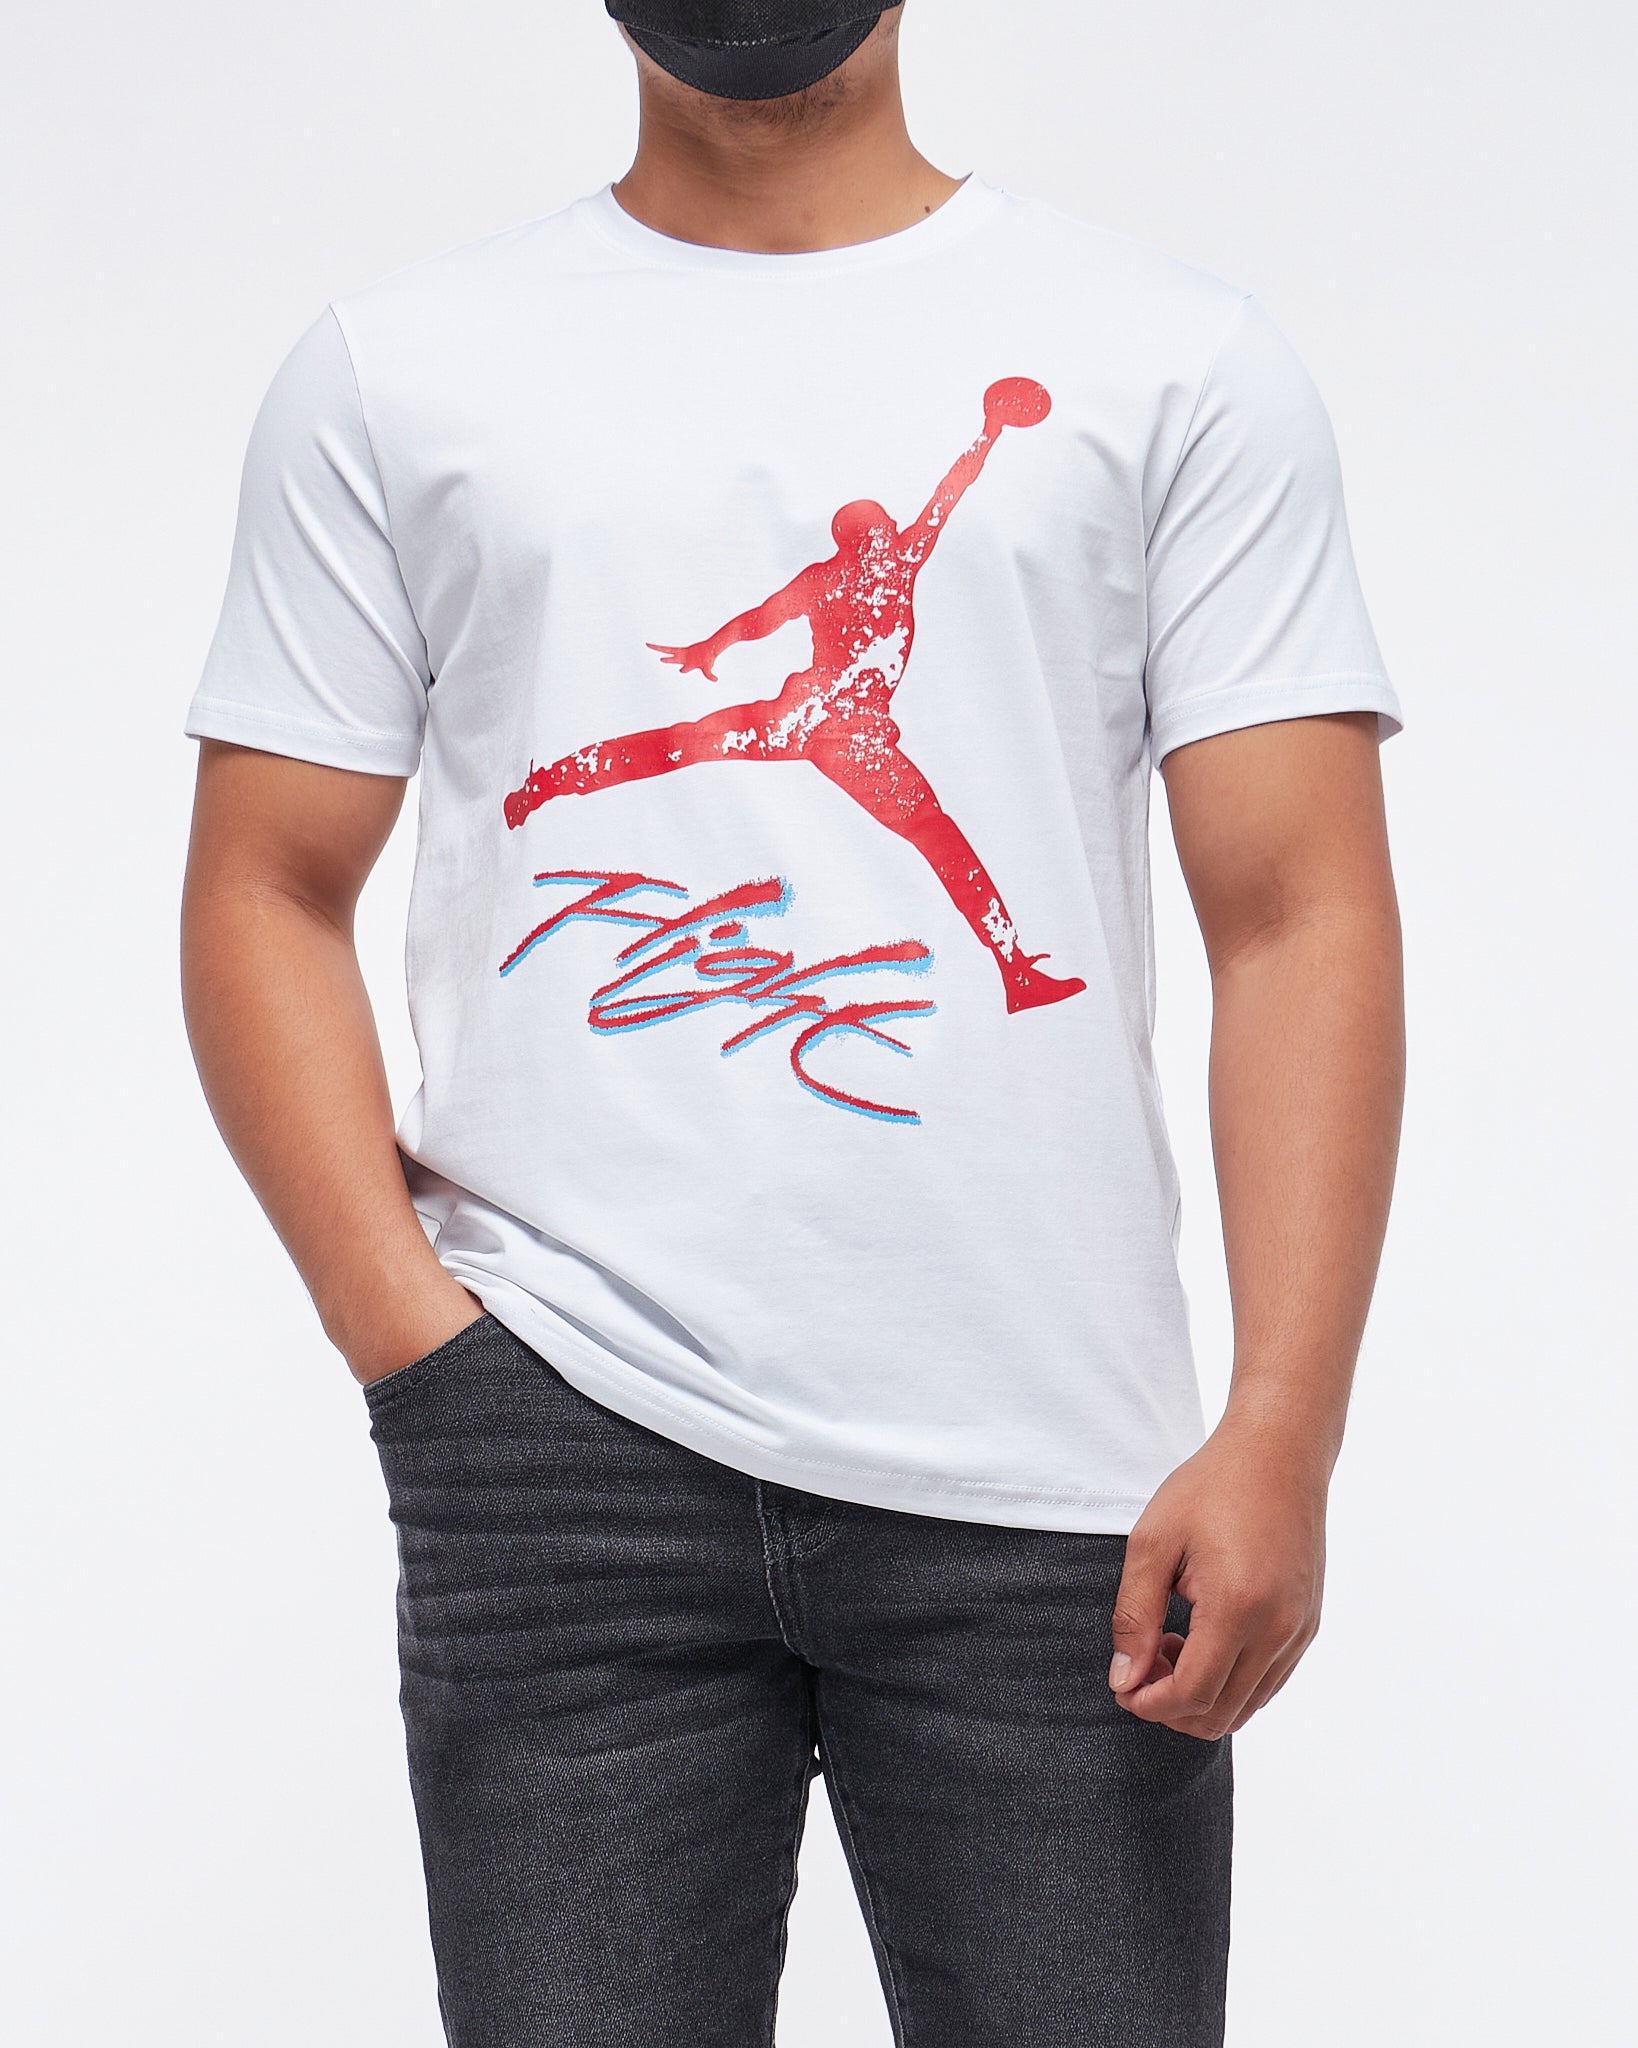 MOI OUTFIT-Flight Jumpman Printed Men T-Shirt 14.90